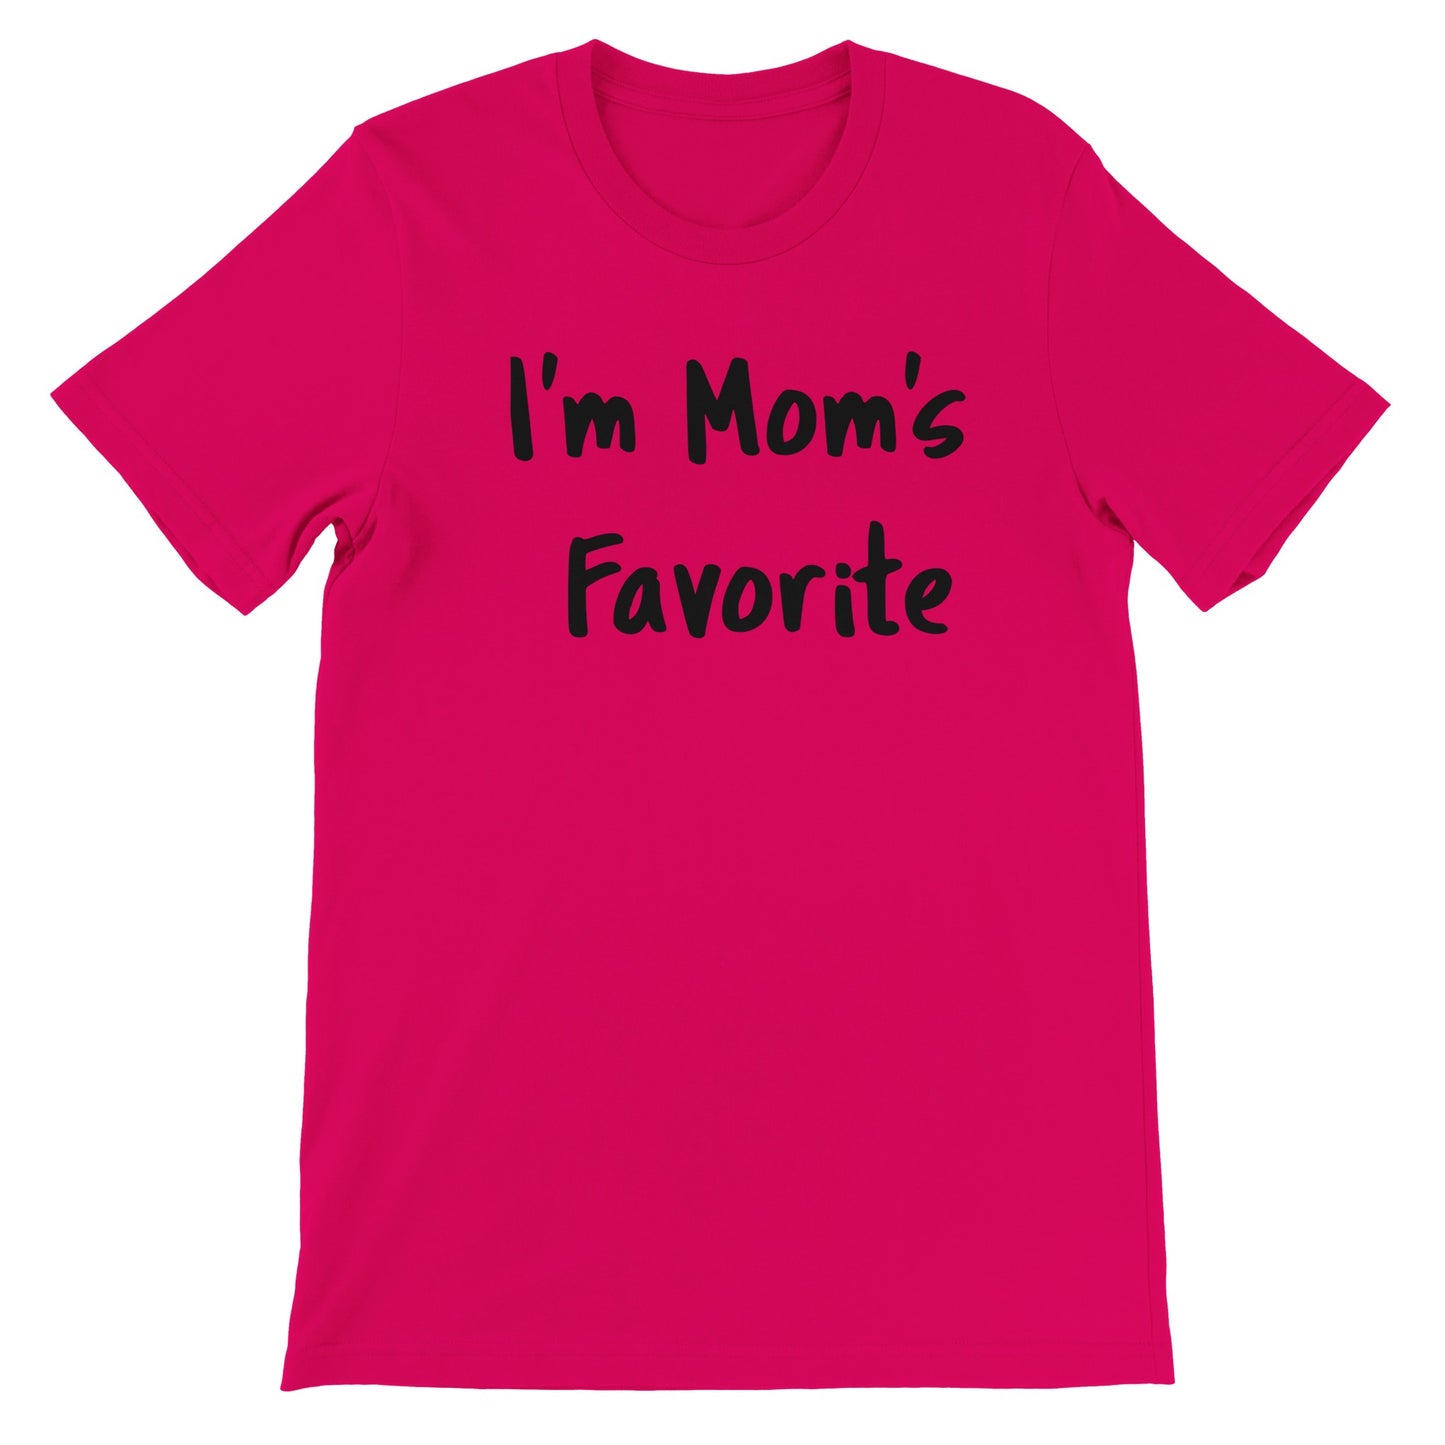 Mom's Favorite - Premium Unisex Crewneck T-shirt